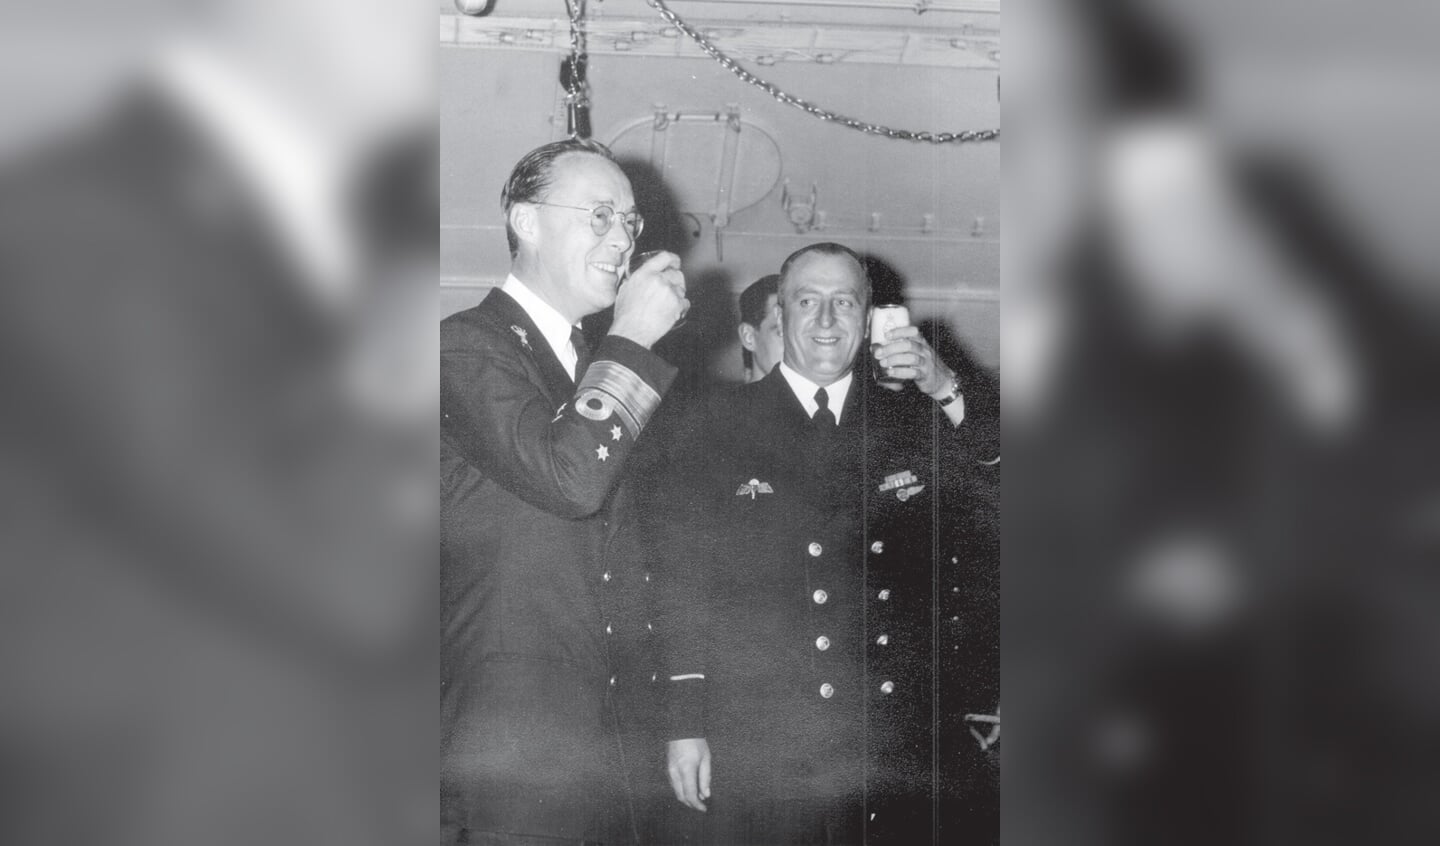 Foto: Pieter Dourlein en prins Bernhard in 1959 (foto erven Dourlein)

Prins Bernhard en Pieter Dourlein in 1959. Dourlein was er gedetacheerd als 'vliegtuigmaker/konstabel'. (bron: familiearchief erven Dourlein)